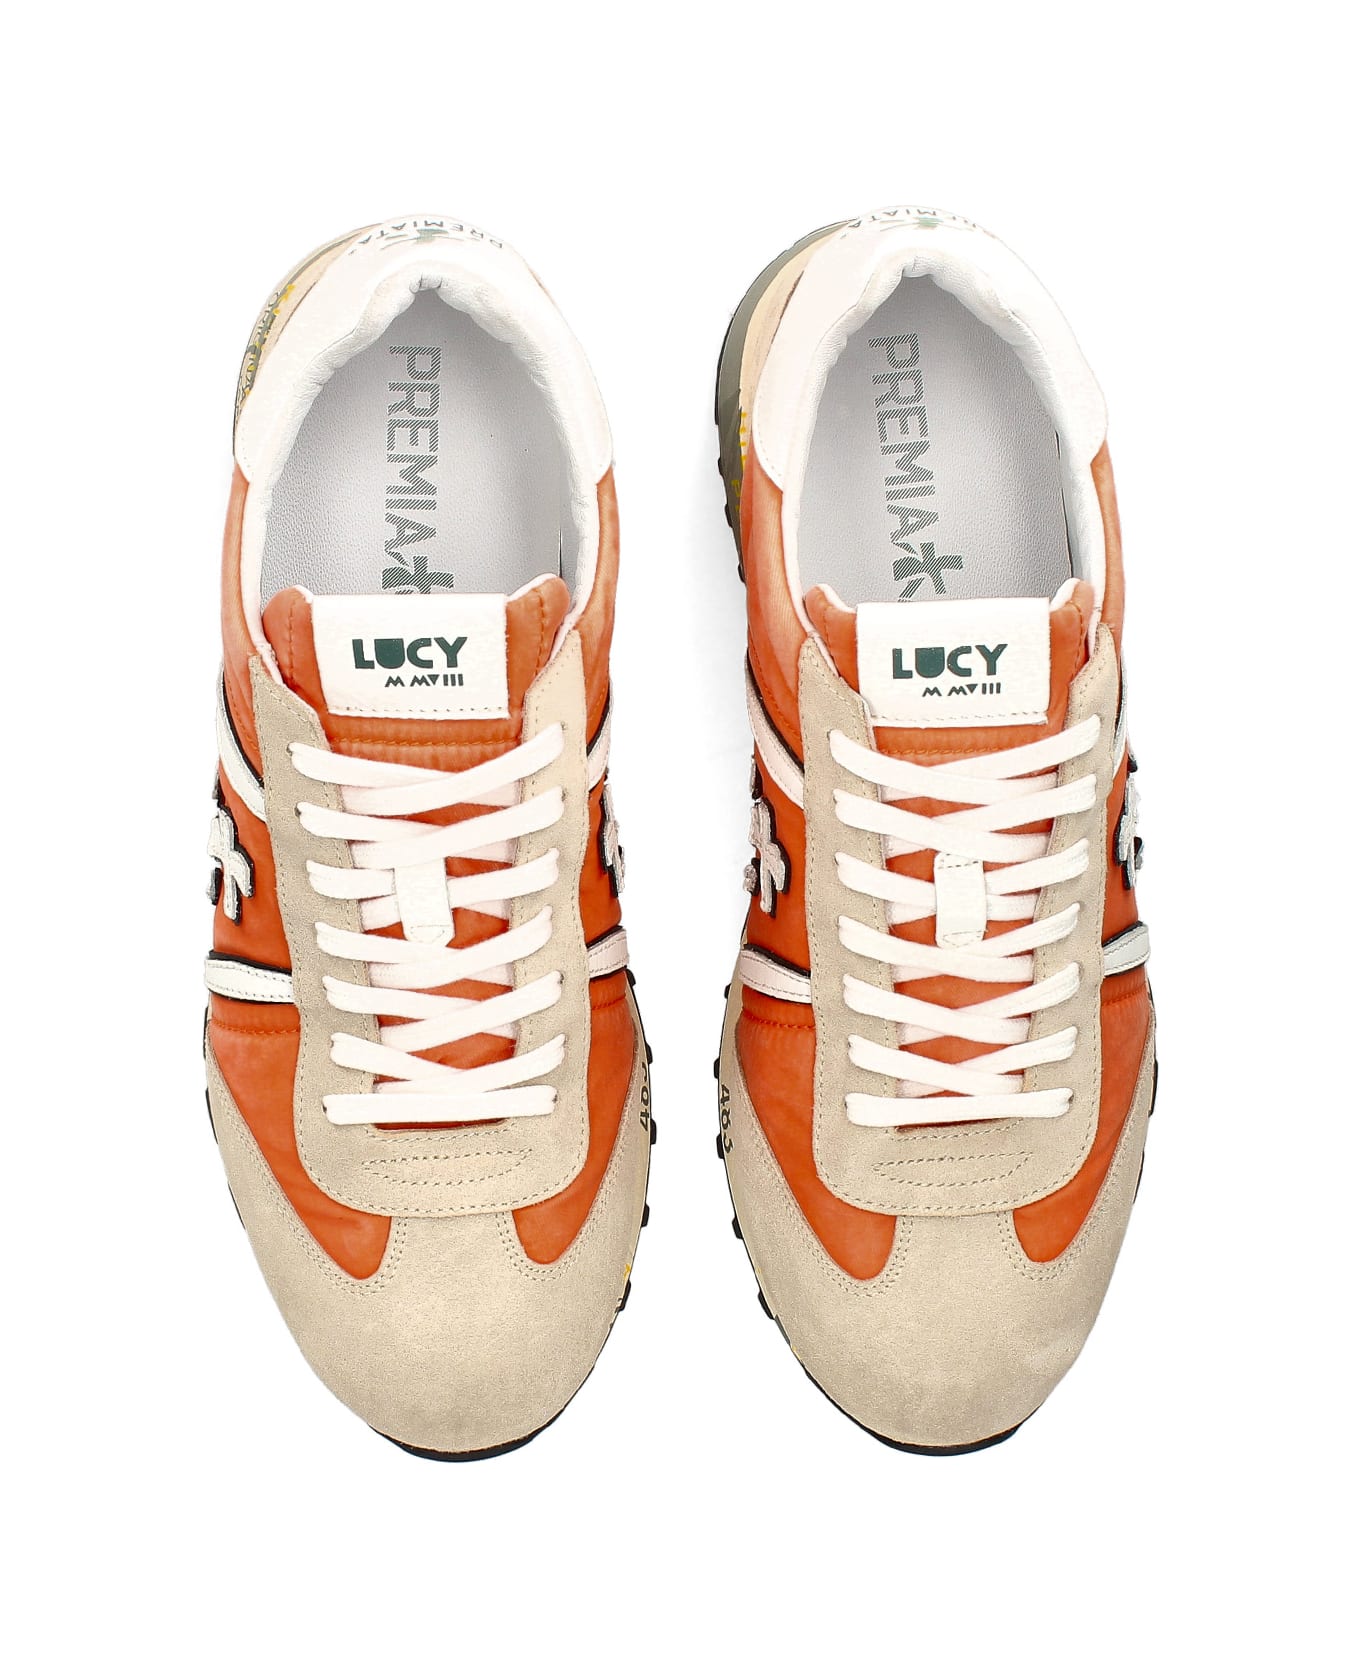 Premiata Lucy Sneaker